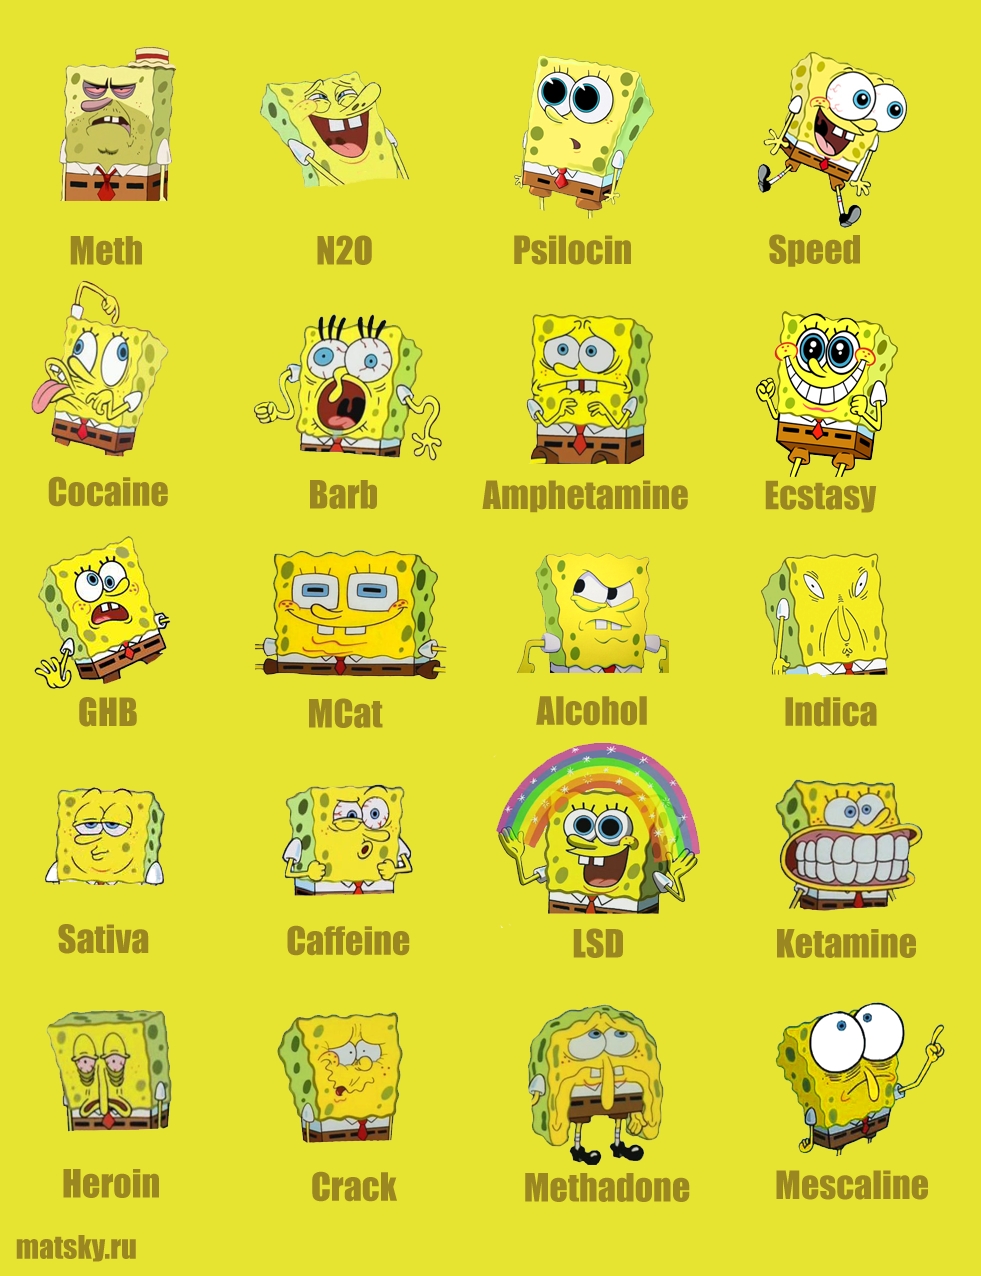 SpongeBob_drugs_biggest.jpg